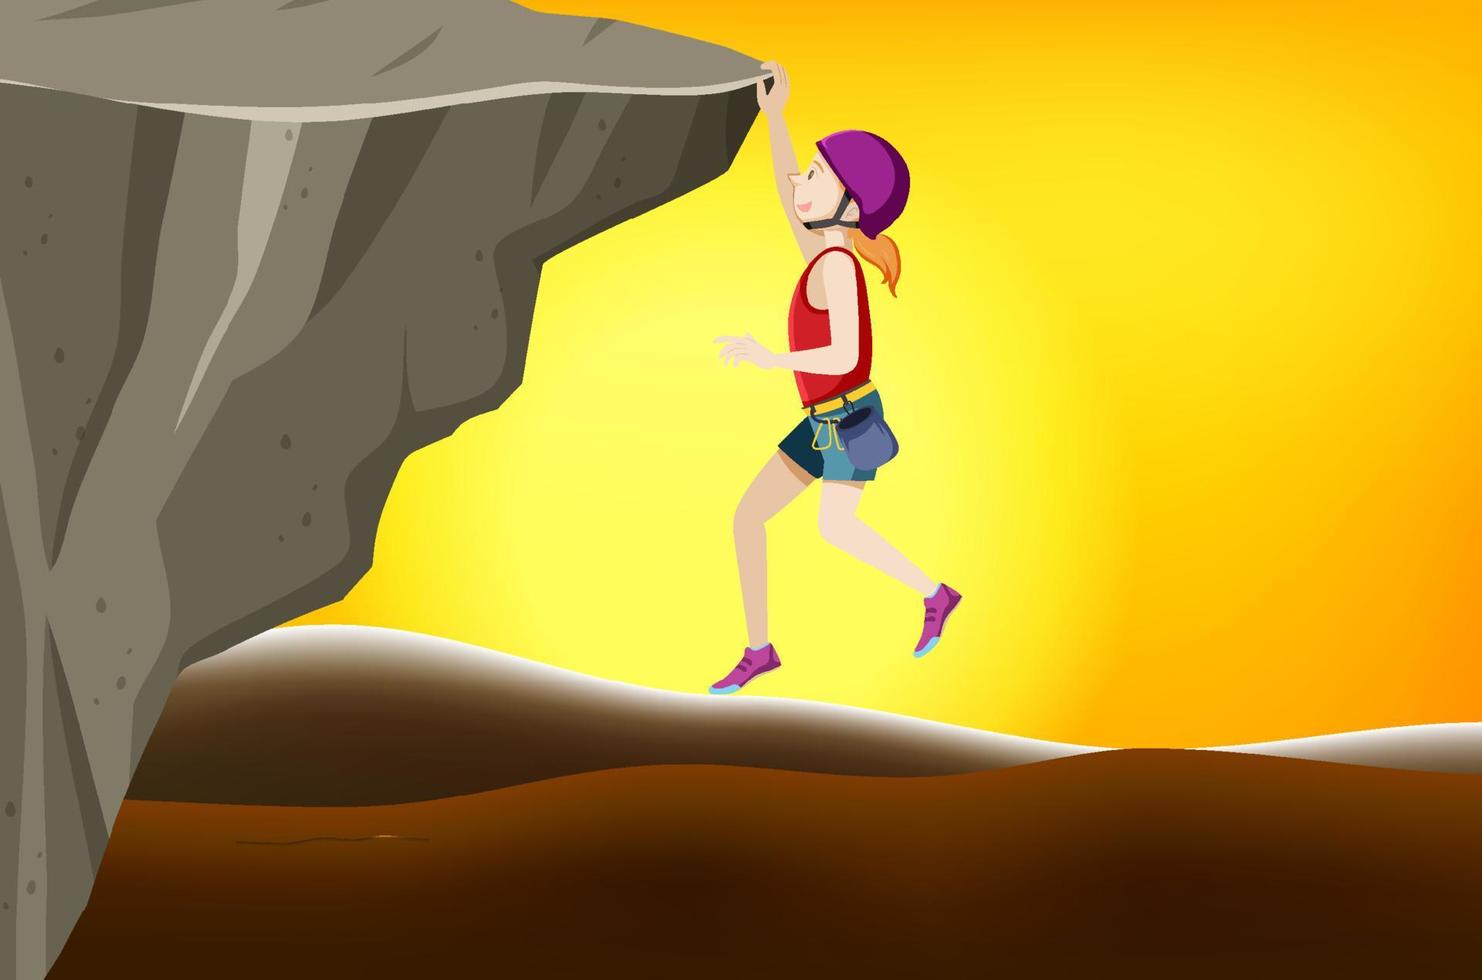 escena de escalada en roca con mujer escalando al atardecer vector